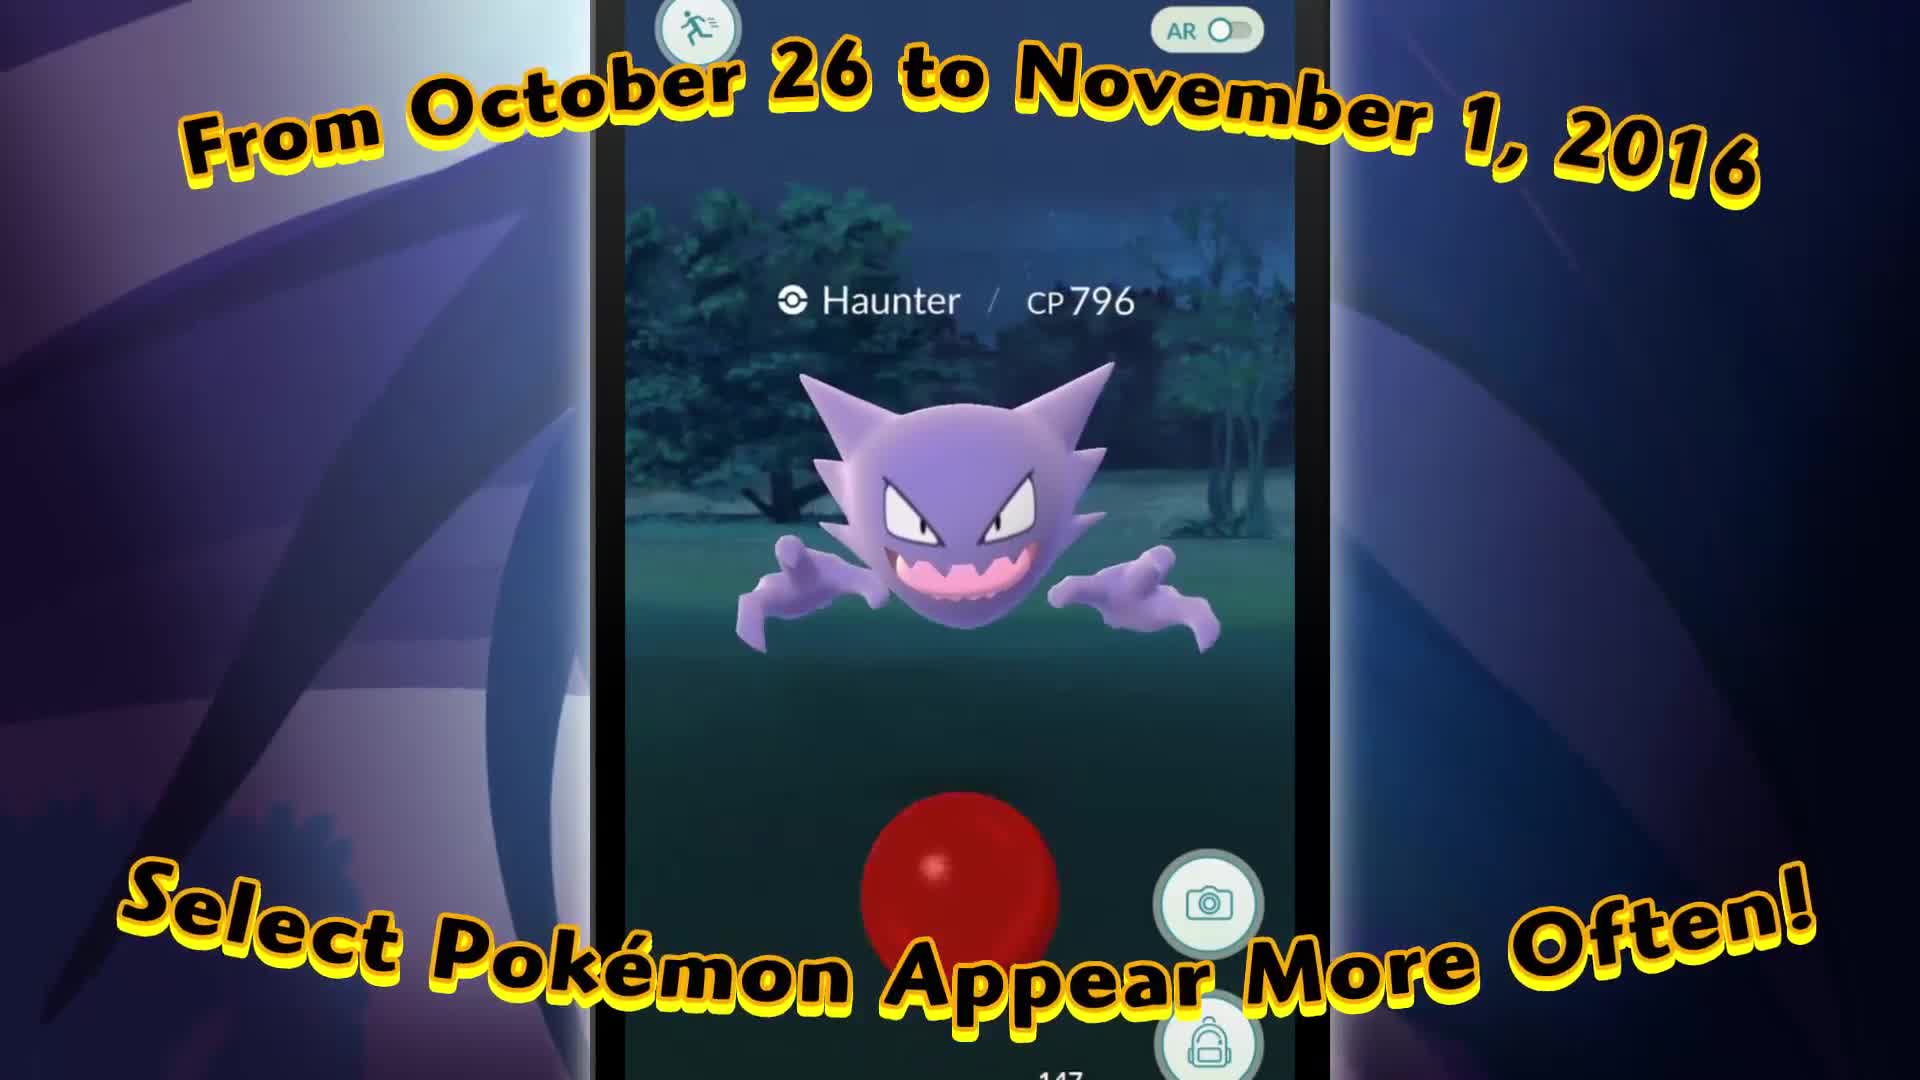 Pokemon GO - Halloween event